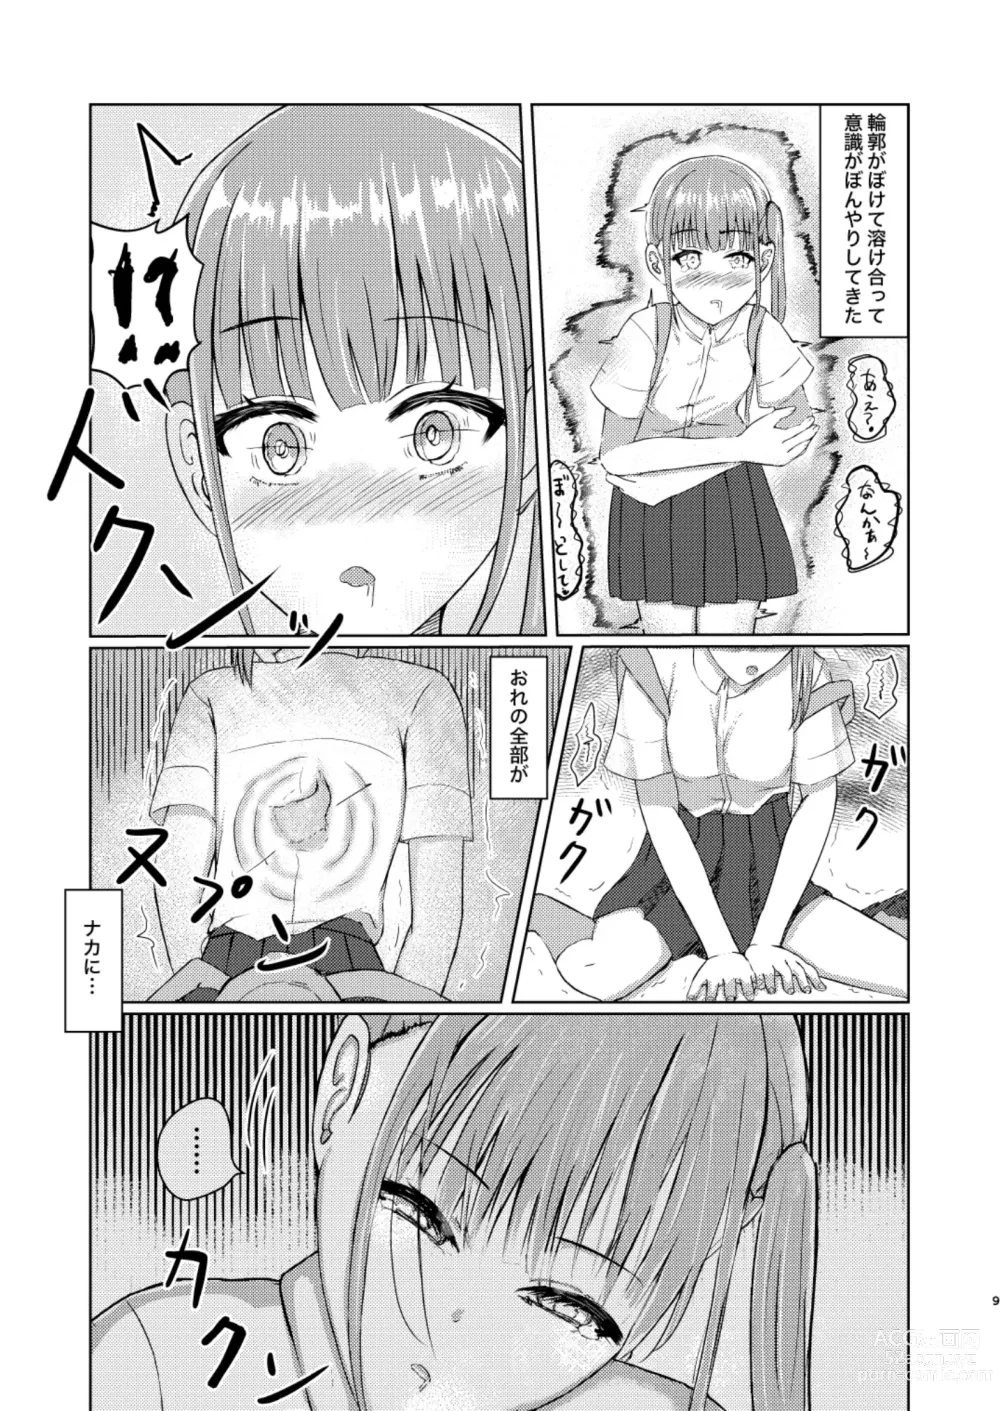 Page 9 of doujinshi Kawaii Ko Mitsuketa node Naka ni Haitte Mita!